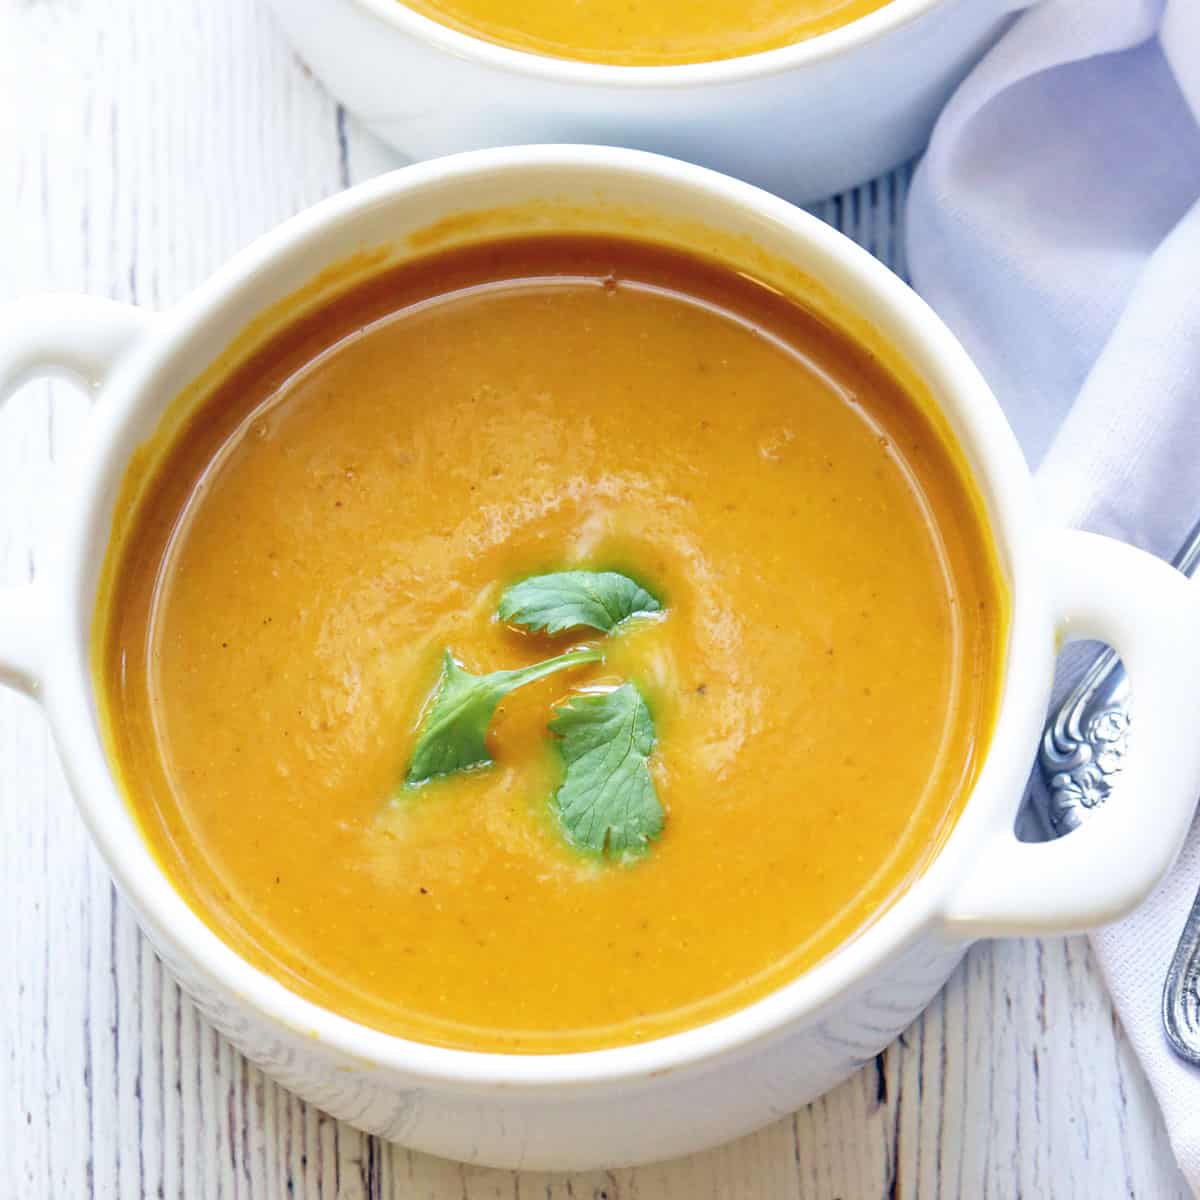 https://healthyrecipesblogs.com/wp-content/uploads/2020/10/pumpkin-soup-featured.jpg